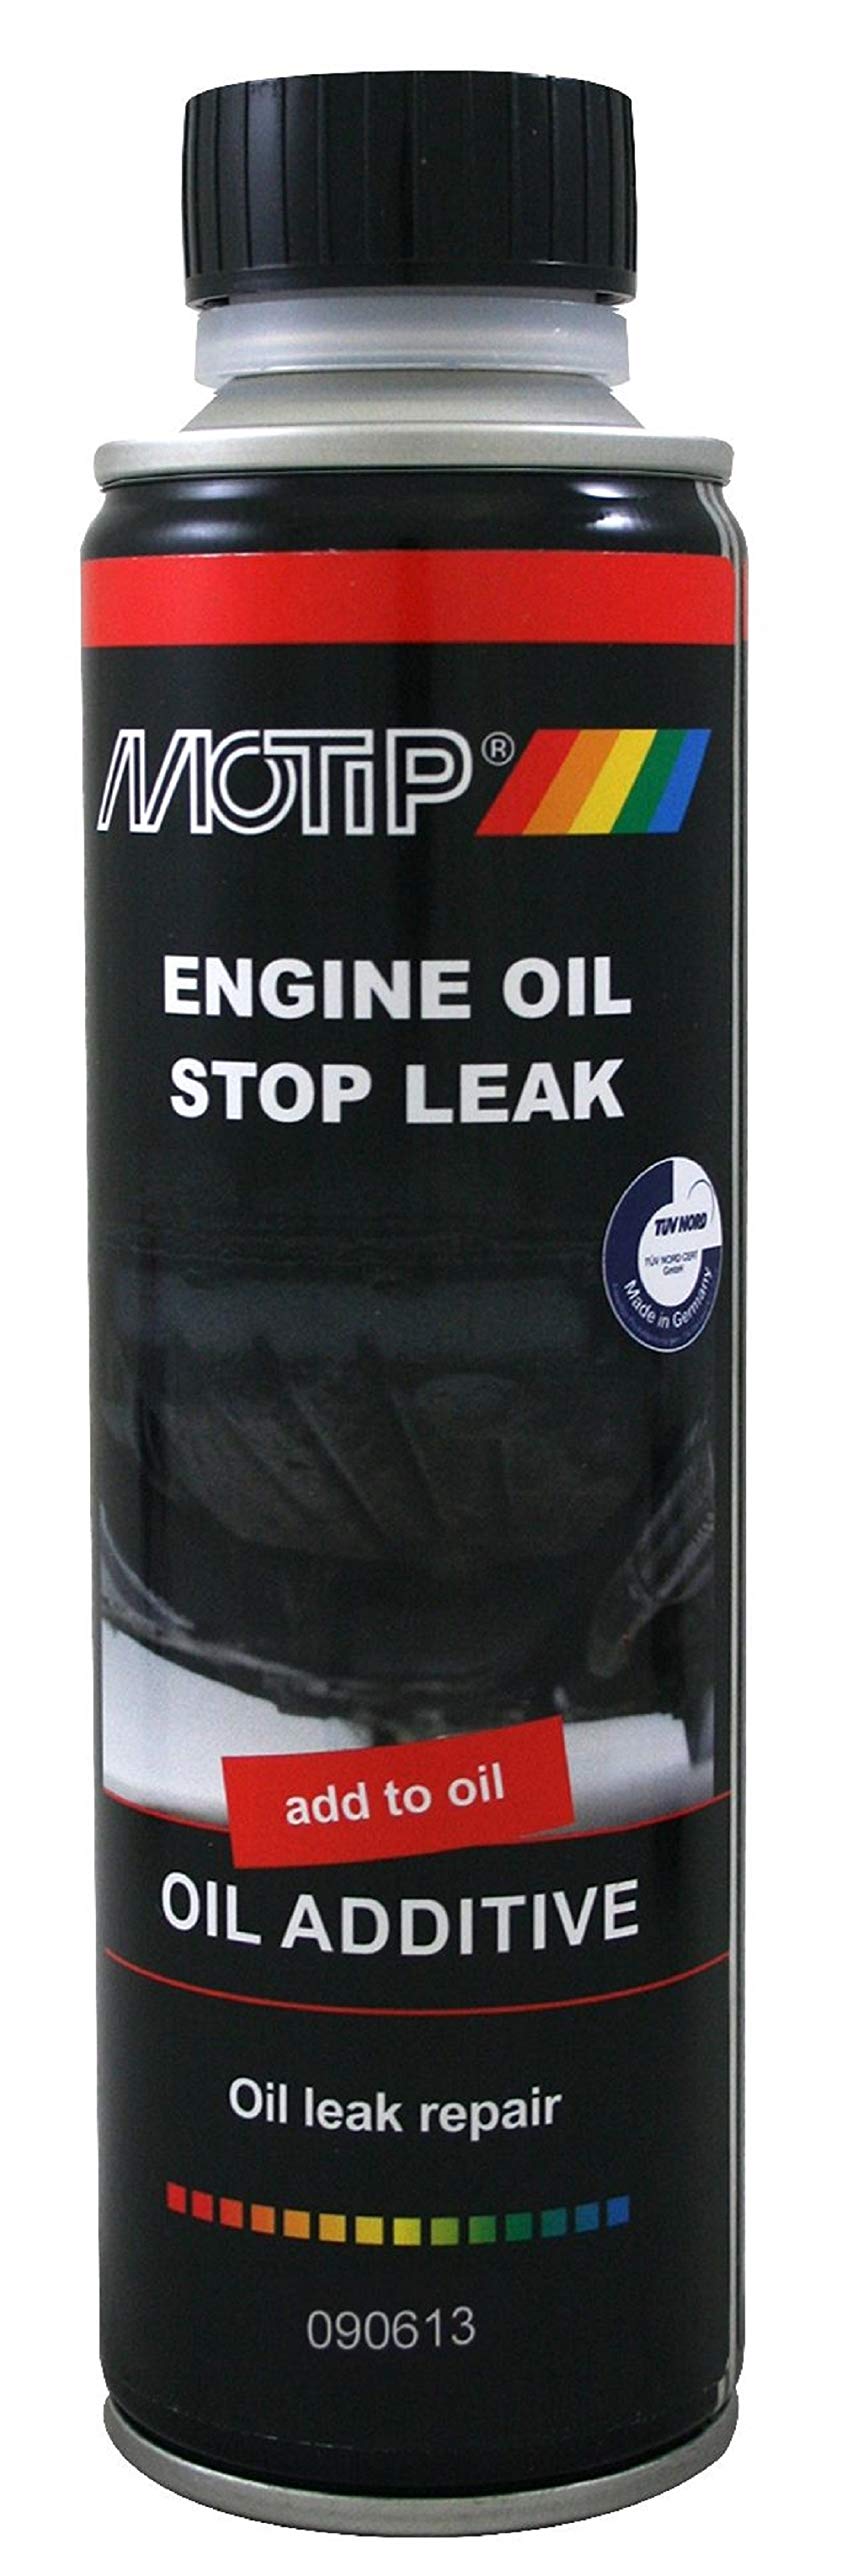 MOTIP Engine Oil Stop Leak 300ml - Ölleck Stop Additive von Motip